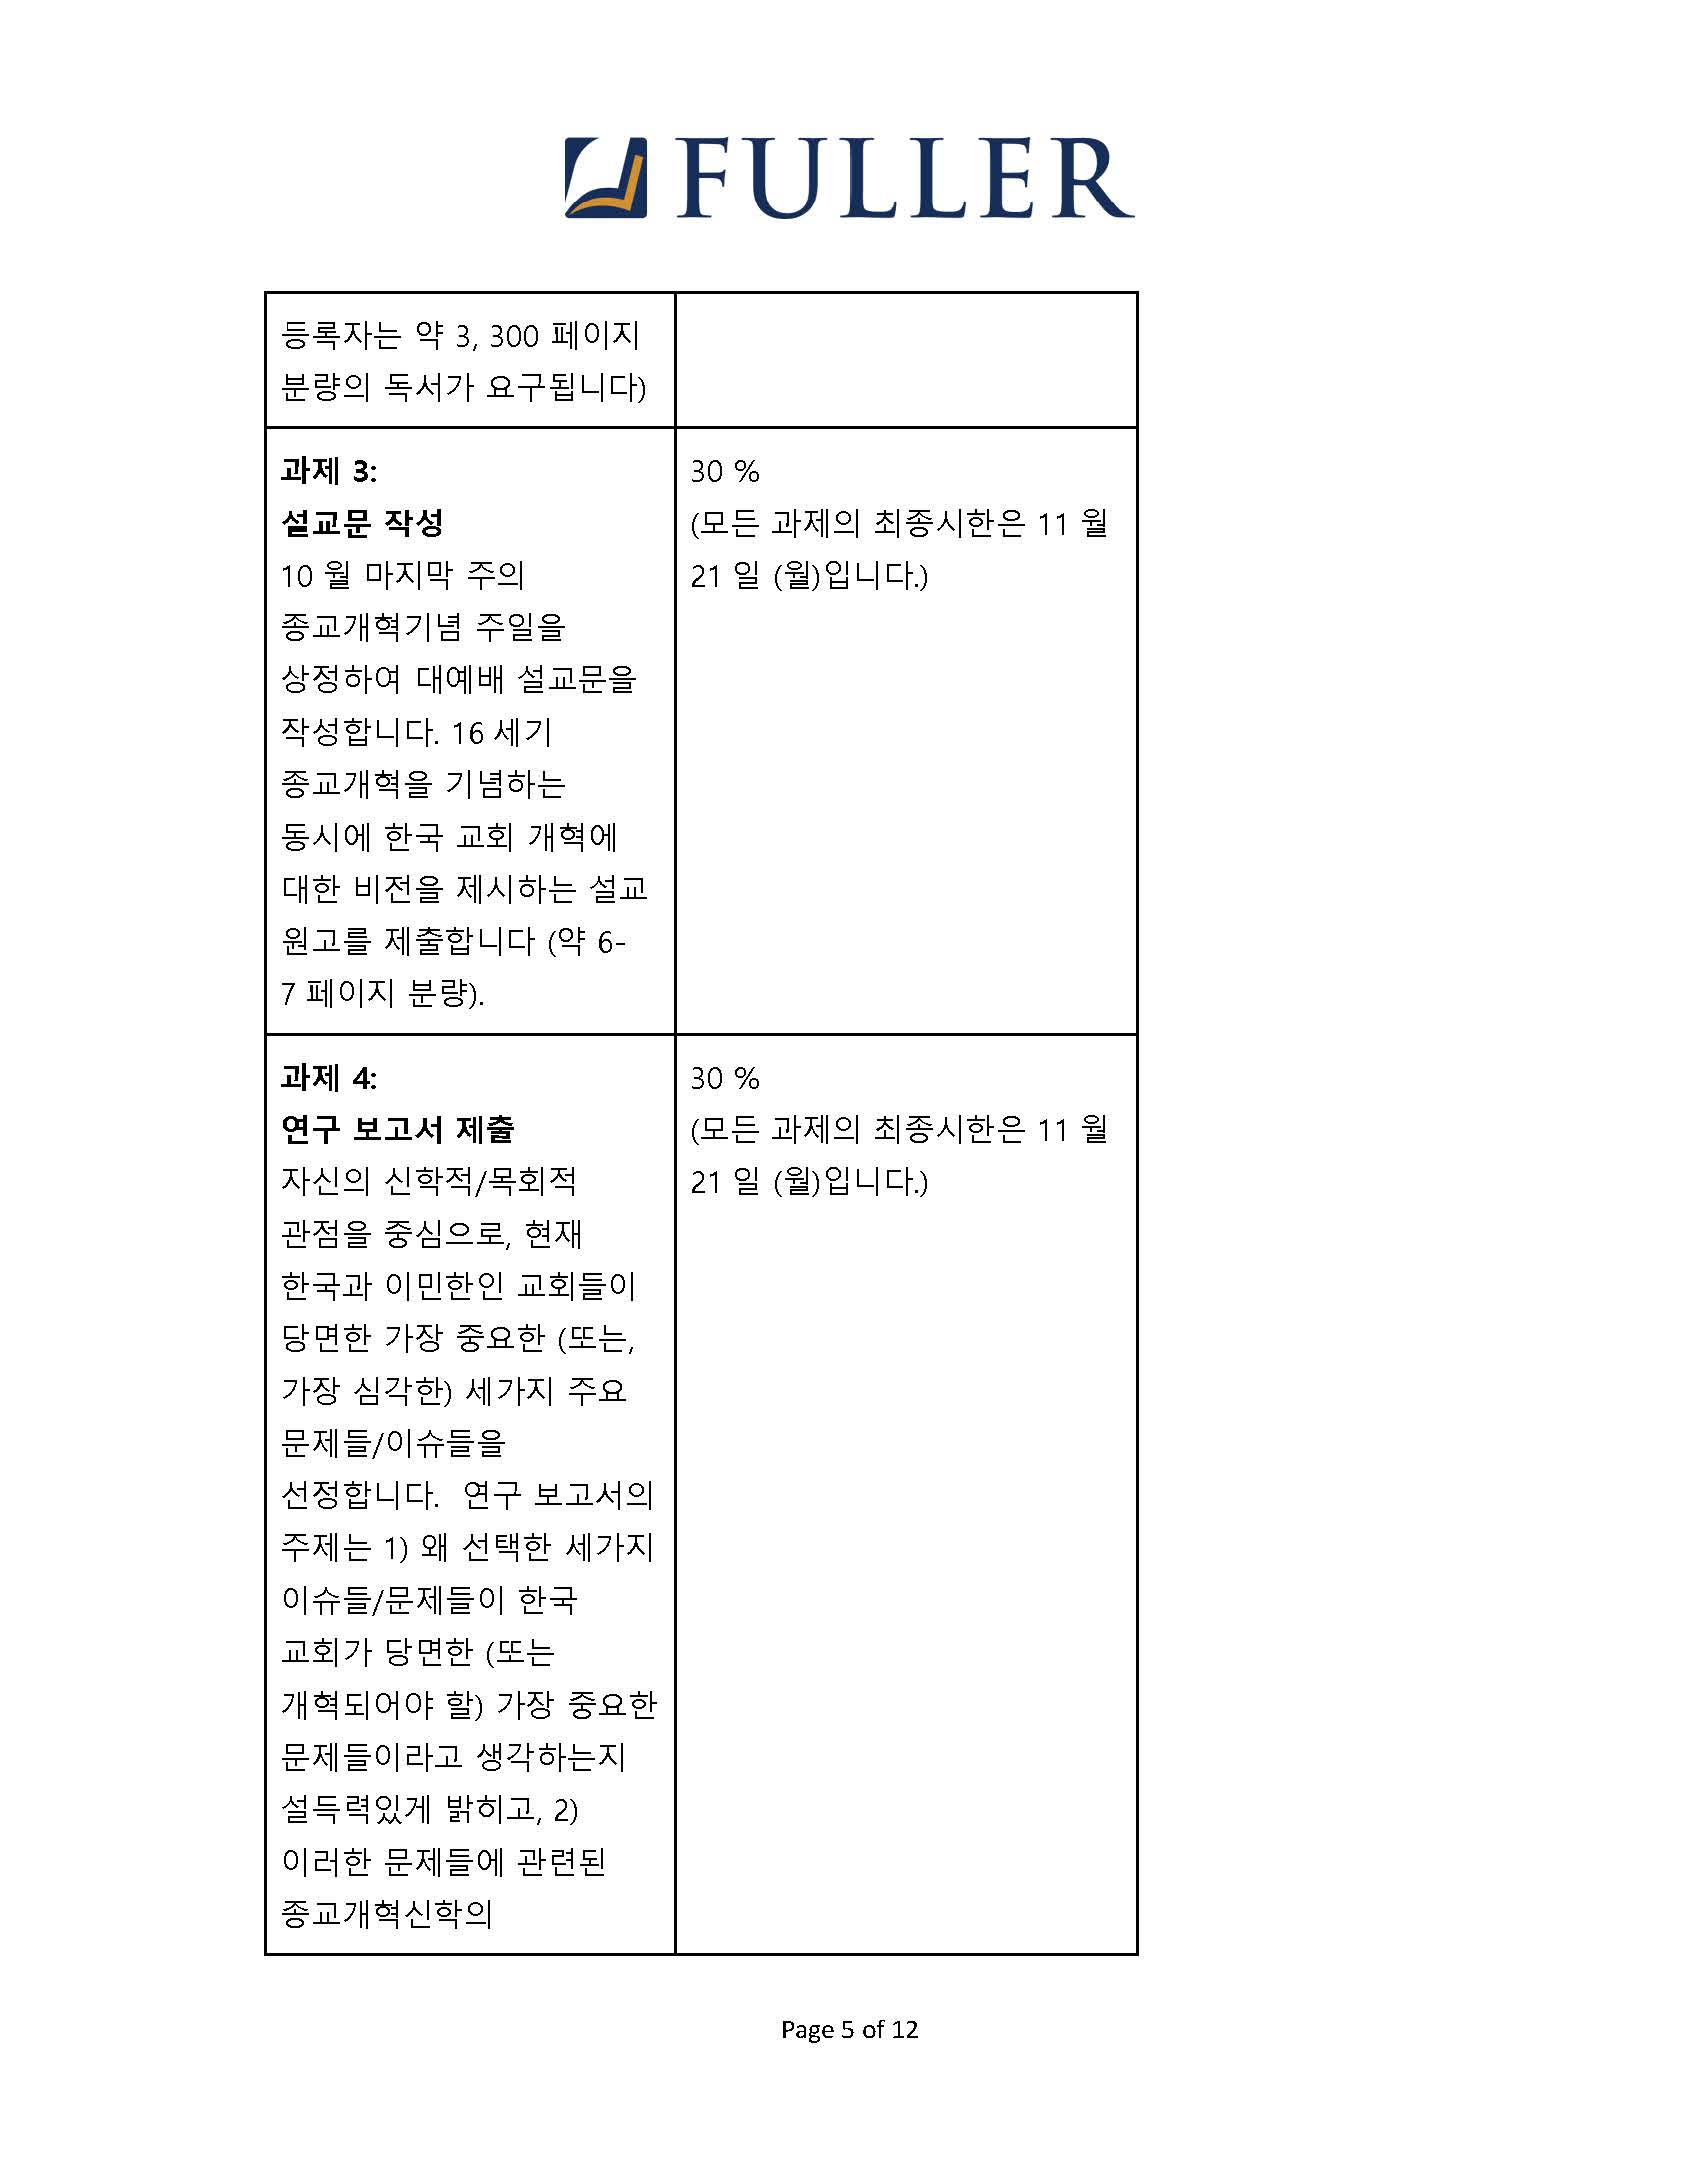 CH743 Syllabus (Korean) (1)_Page_05.jpg